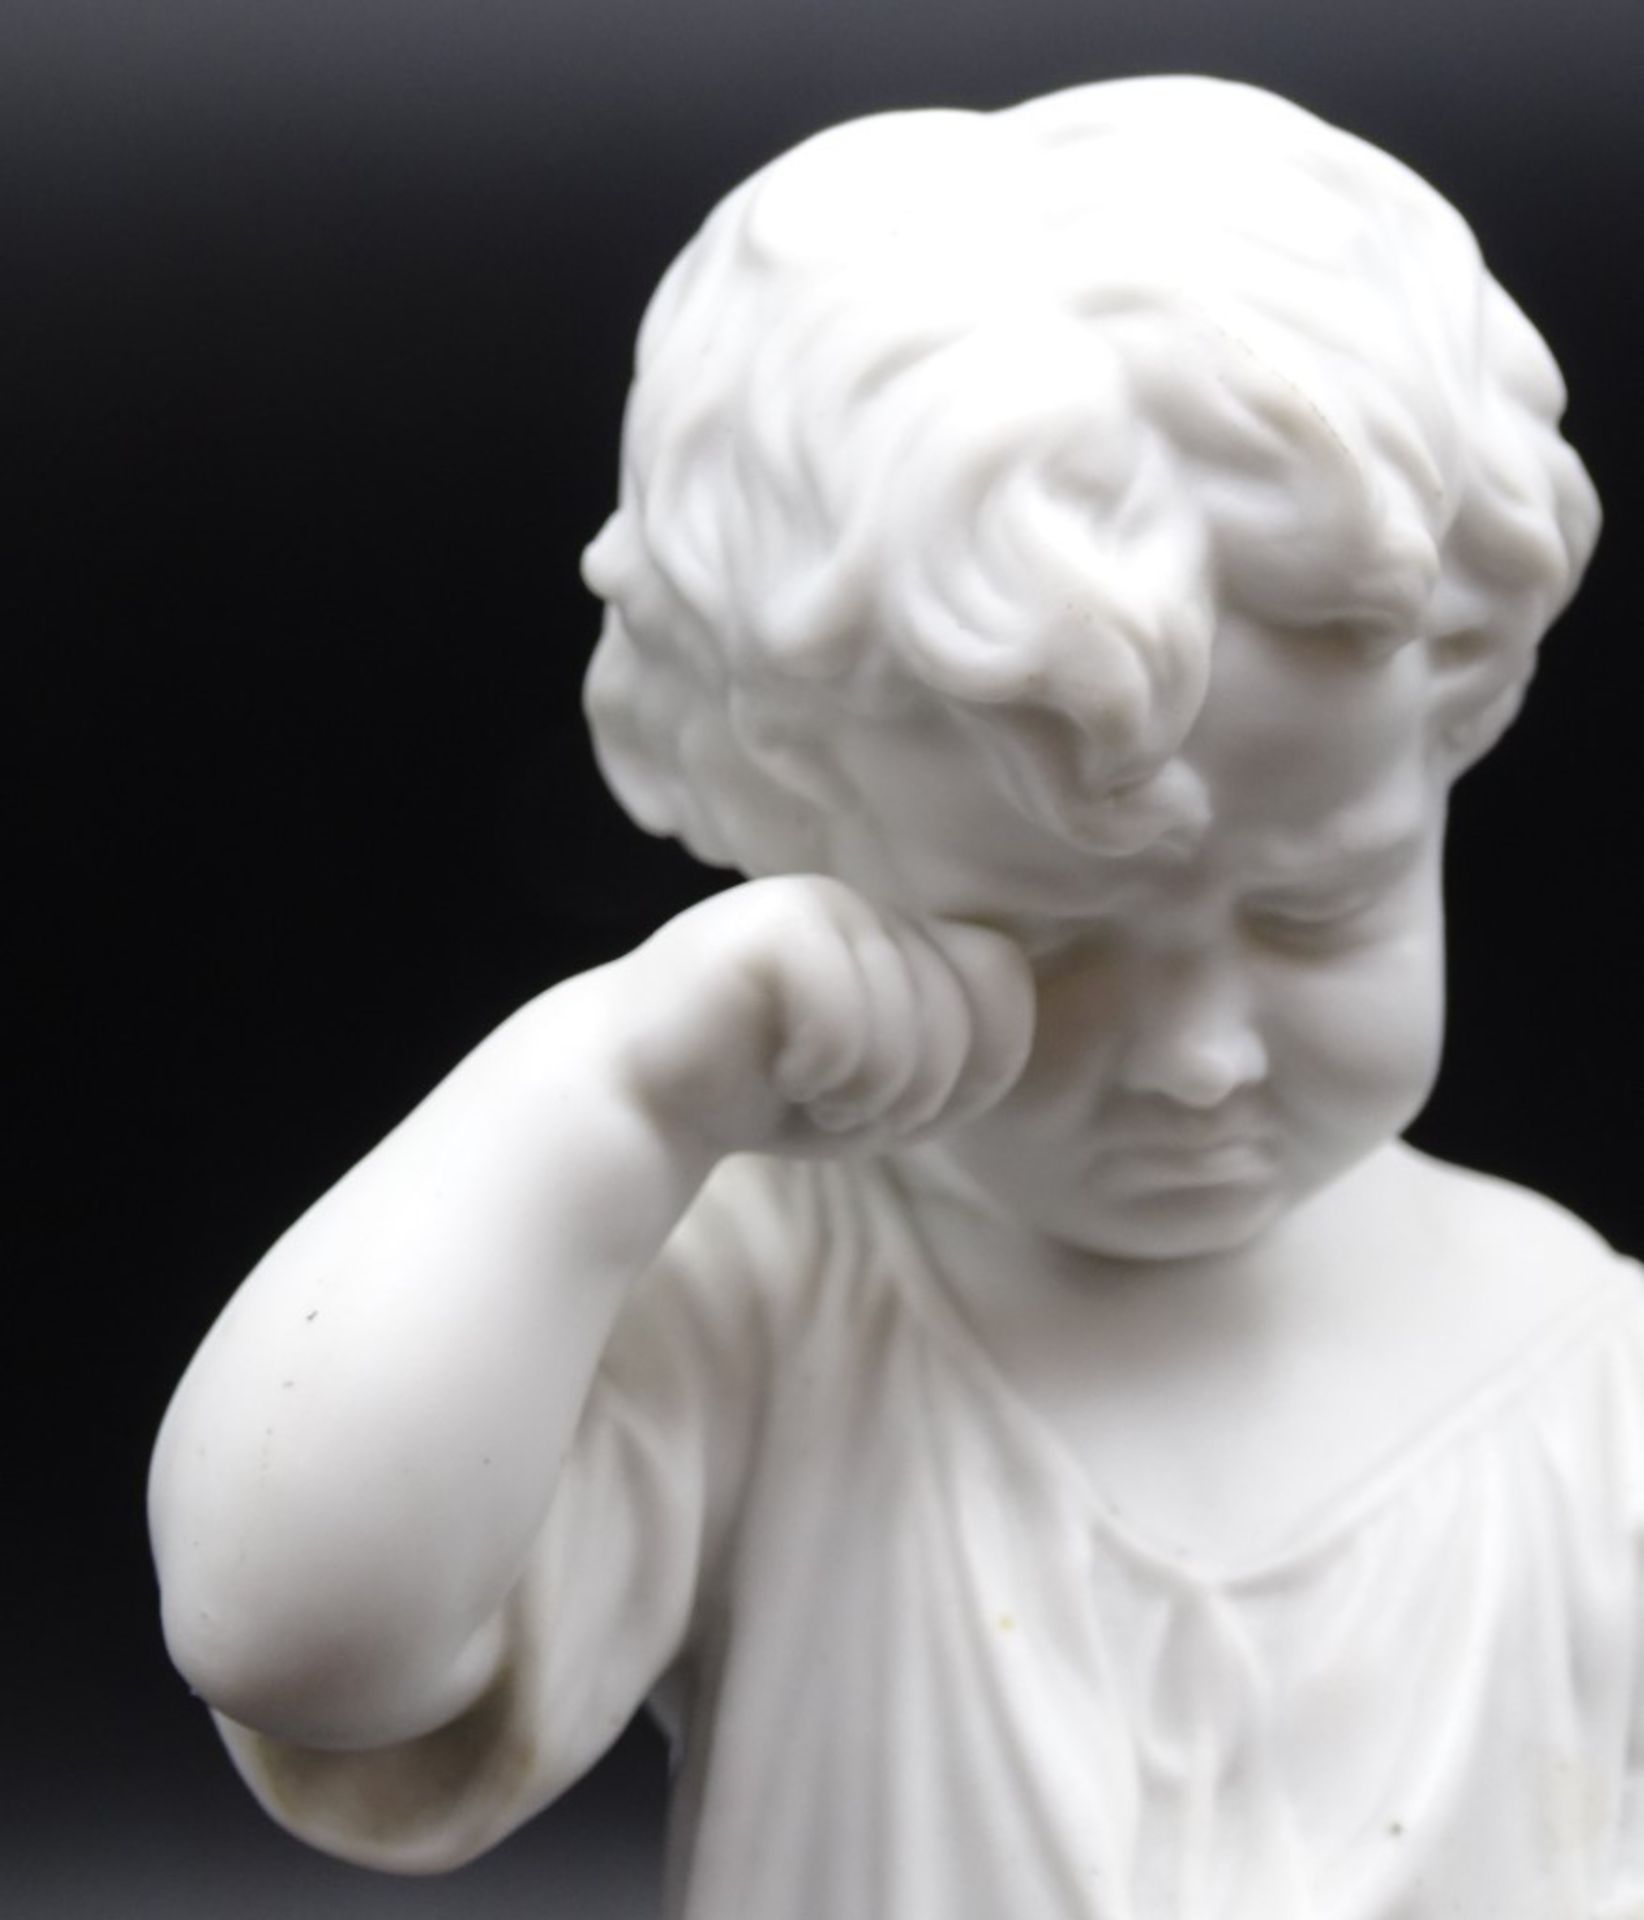 Kinderfigur aus Biskuitporzellan mit zerbrochenem Krug, ungemarkt, H. 24 cm, leicht reinigungsbedür - Image 7 of 8